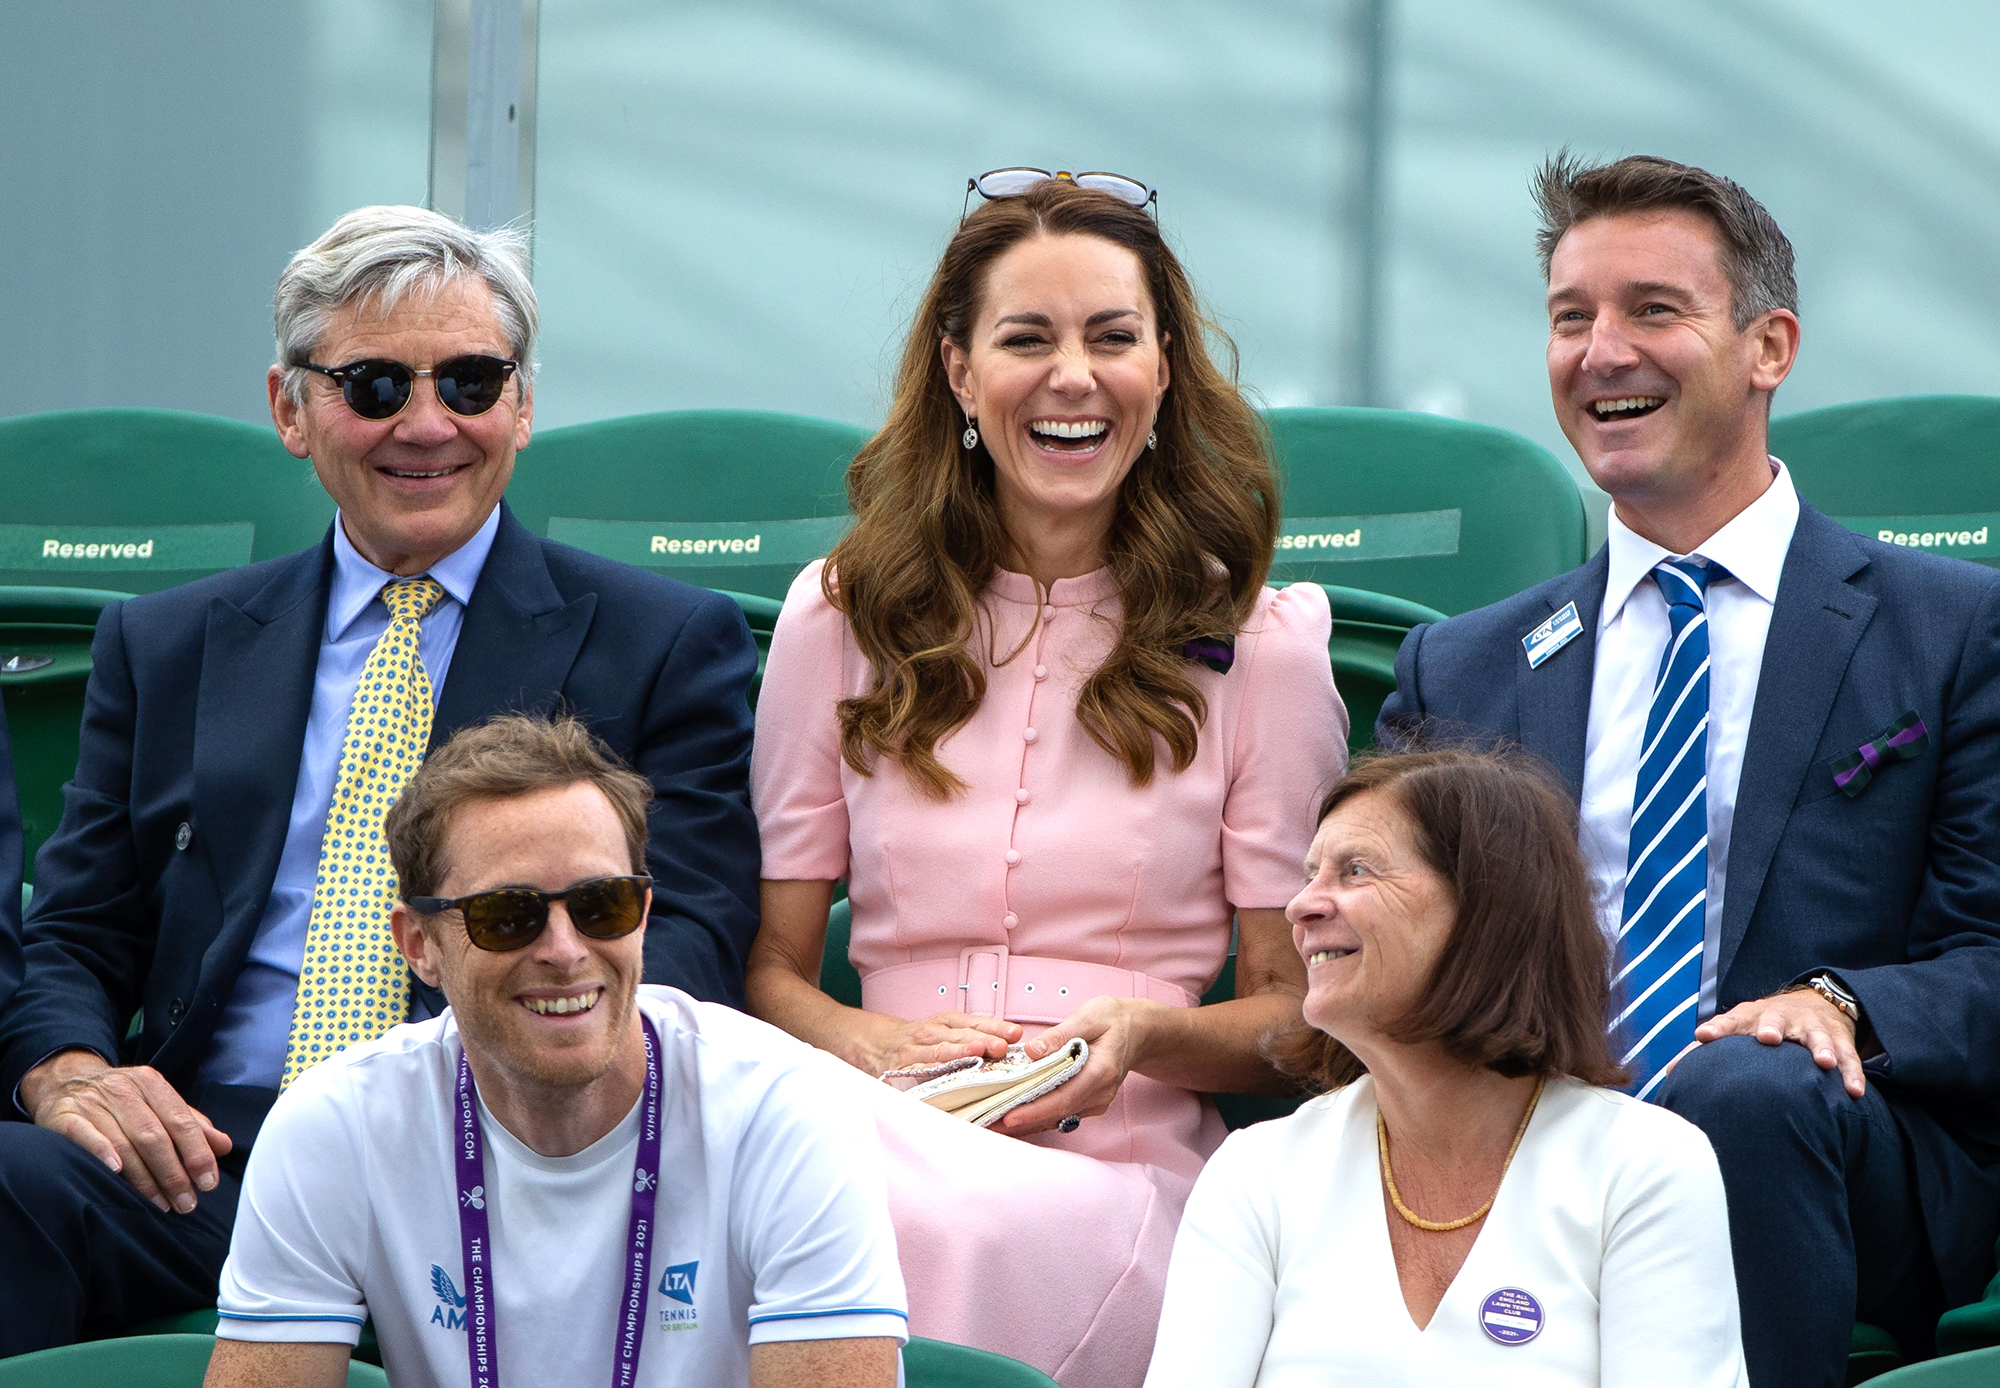 25+ Photos of the Royals at Wimbledon - Photos of Prince William, Kate, the  Queen at Wimbledon